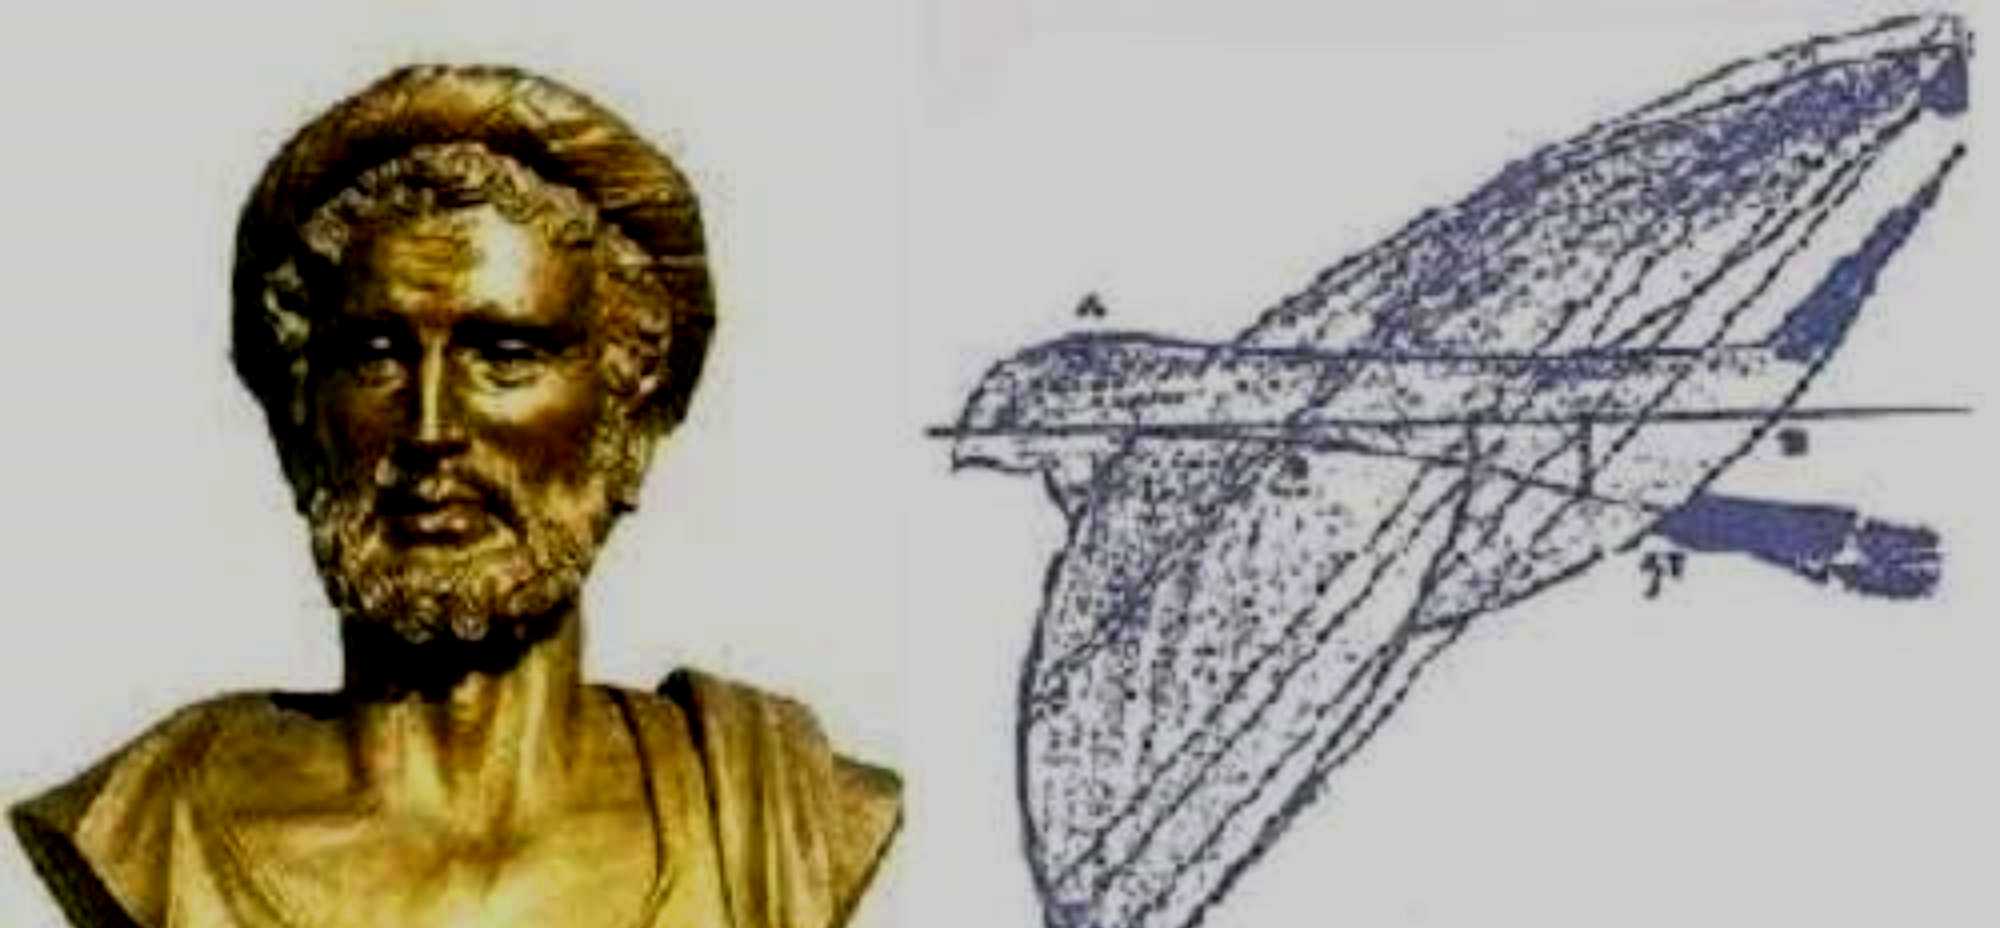 Το πρώτο UAV κατασκευάστηκε από Έλληνα περίπου στο 400-350 π.Χ.!